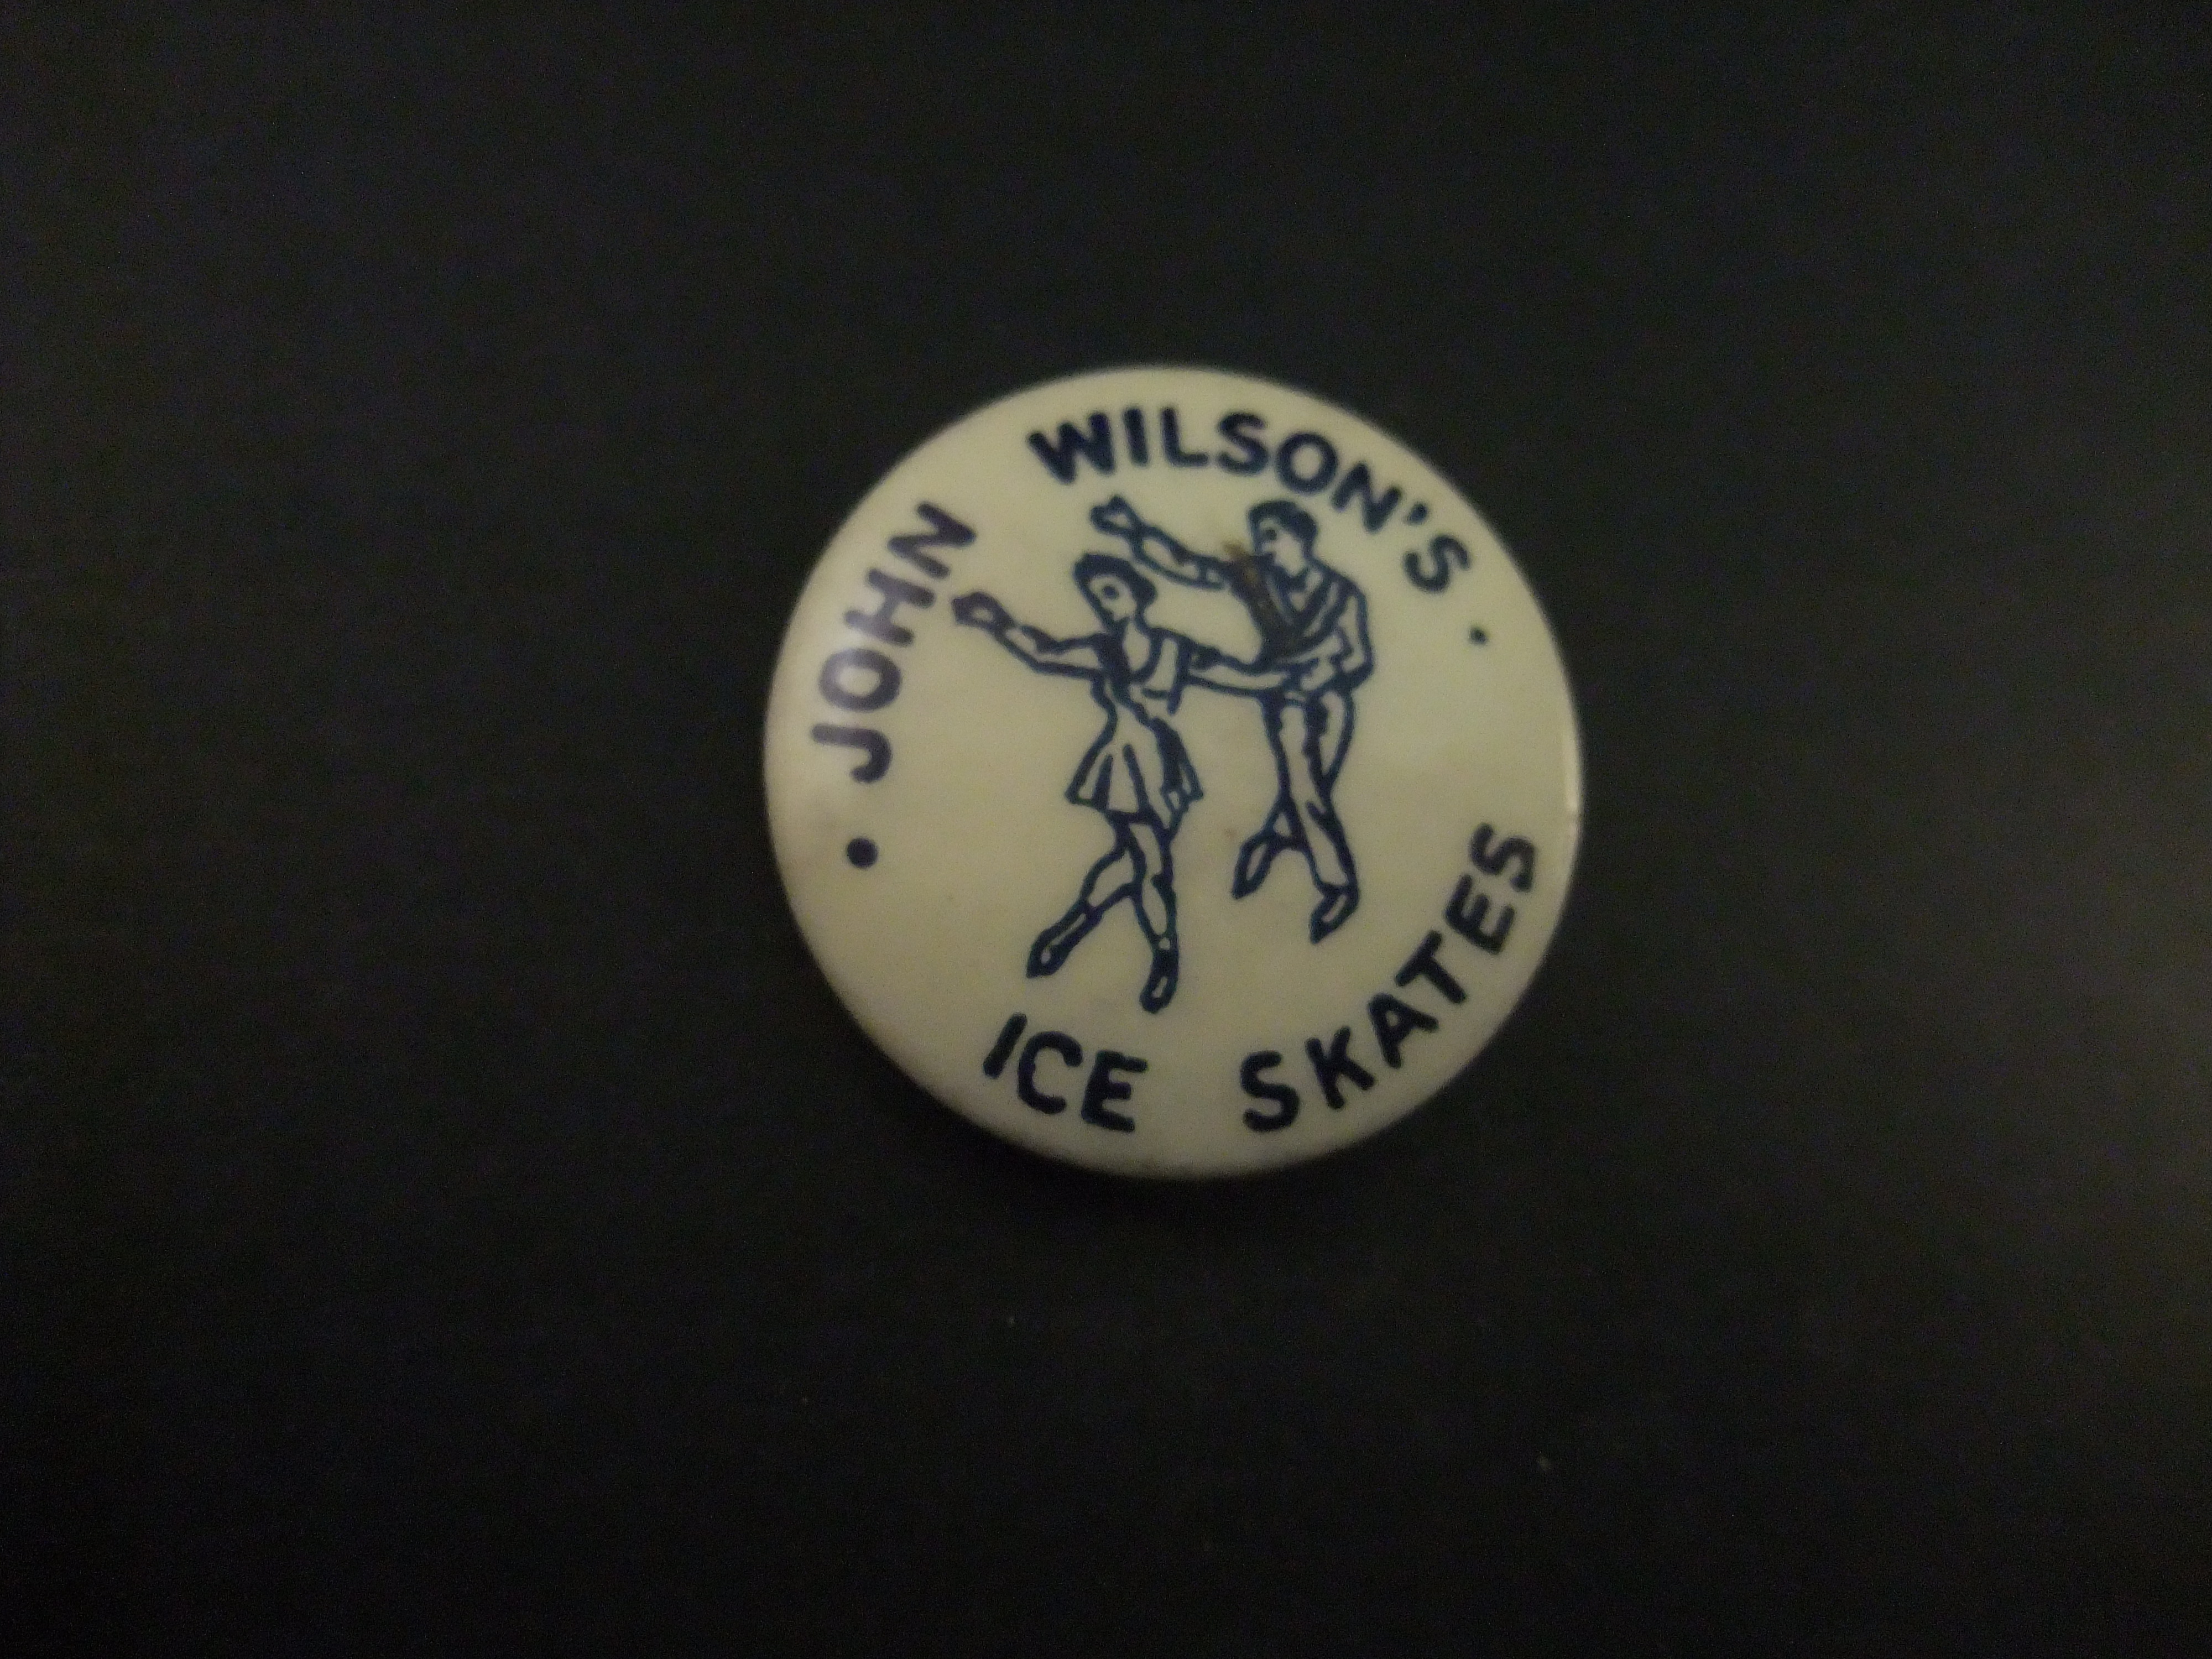 John Wilson ice skating Engeland ( ontwerp, de ontwikkeling, de productie en de verkoop van kunstschaatsen)